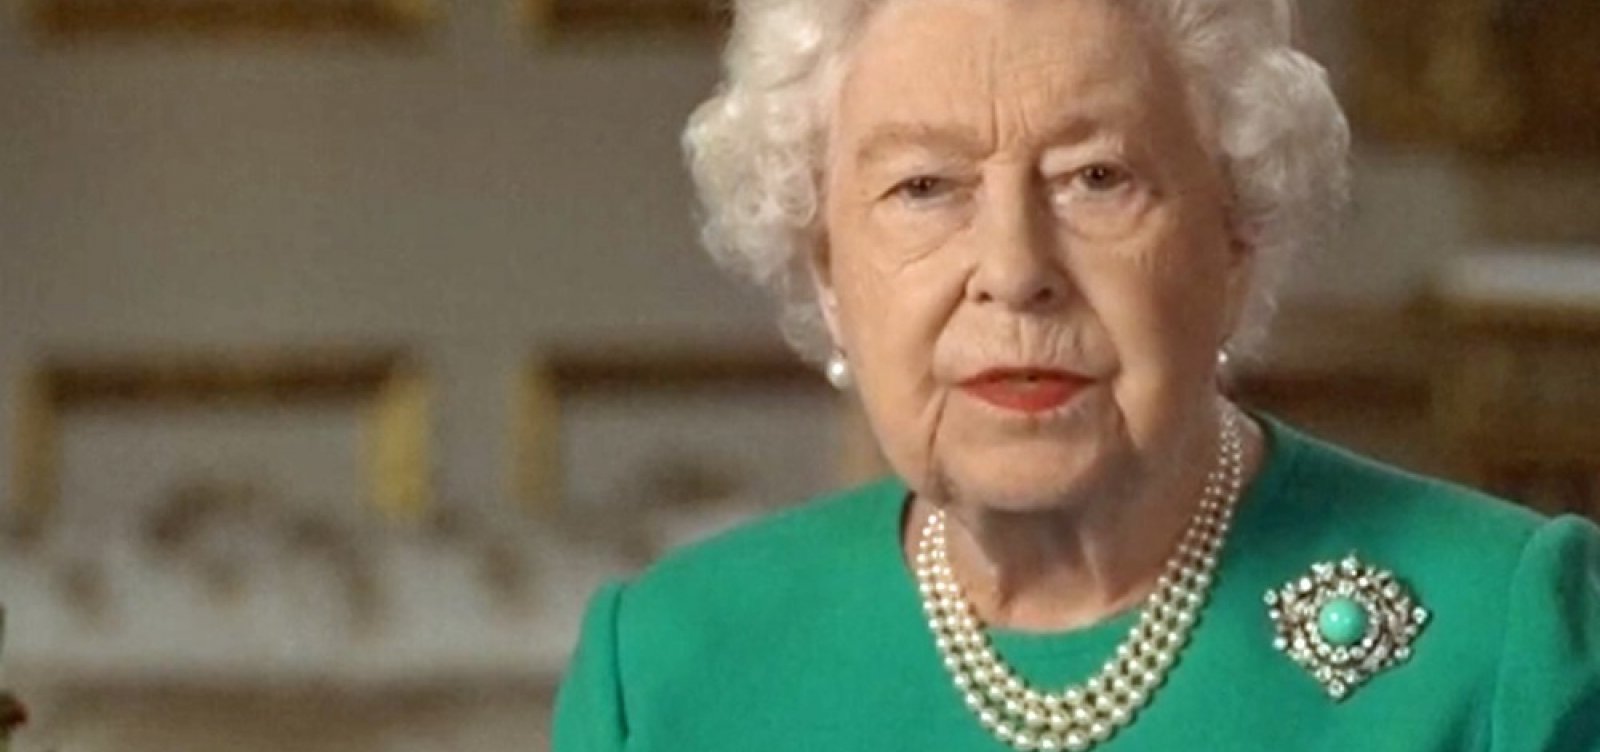 Em discurso raro, rainha Elizabeth II diz a britânicos: 'Vamos nos encontrar novamente'